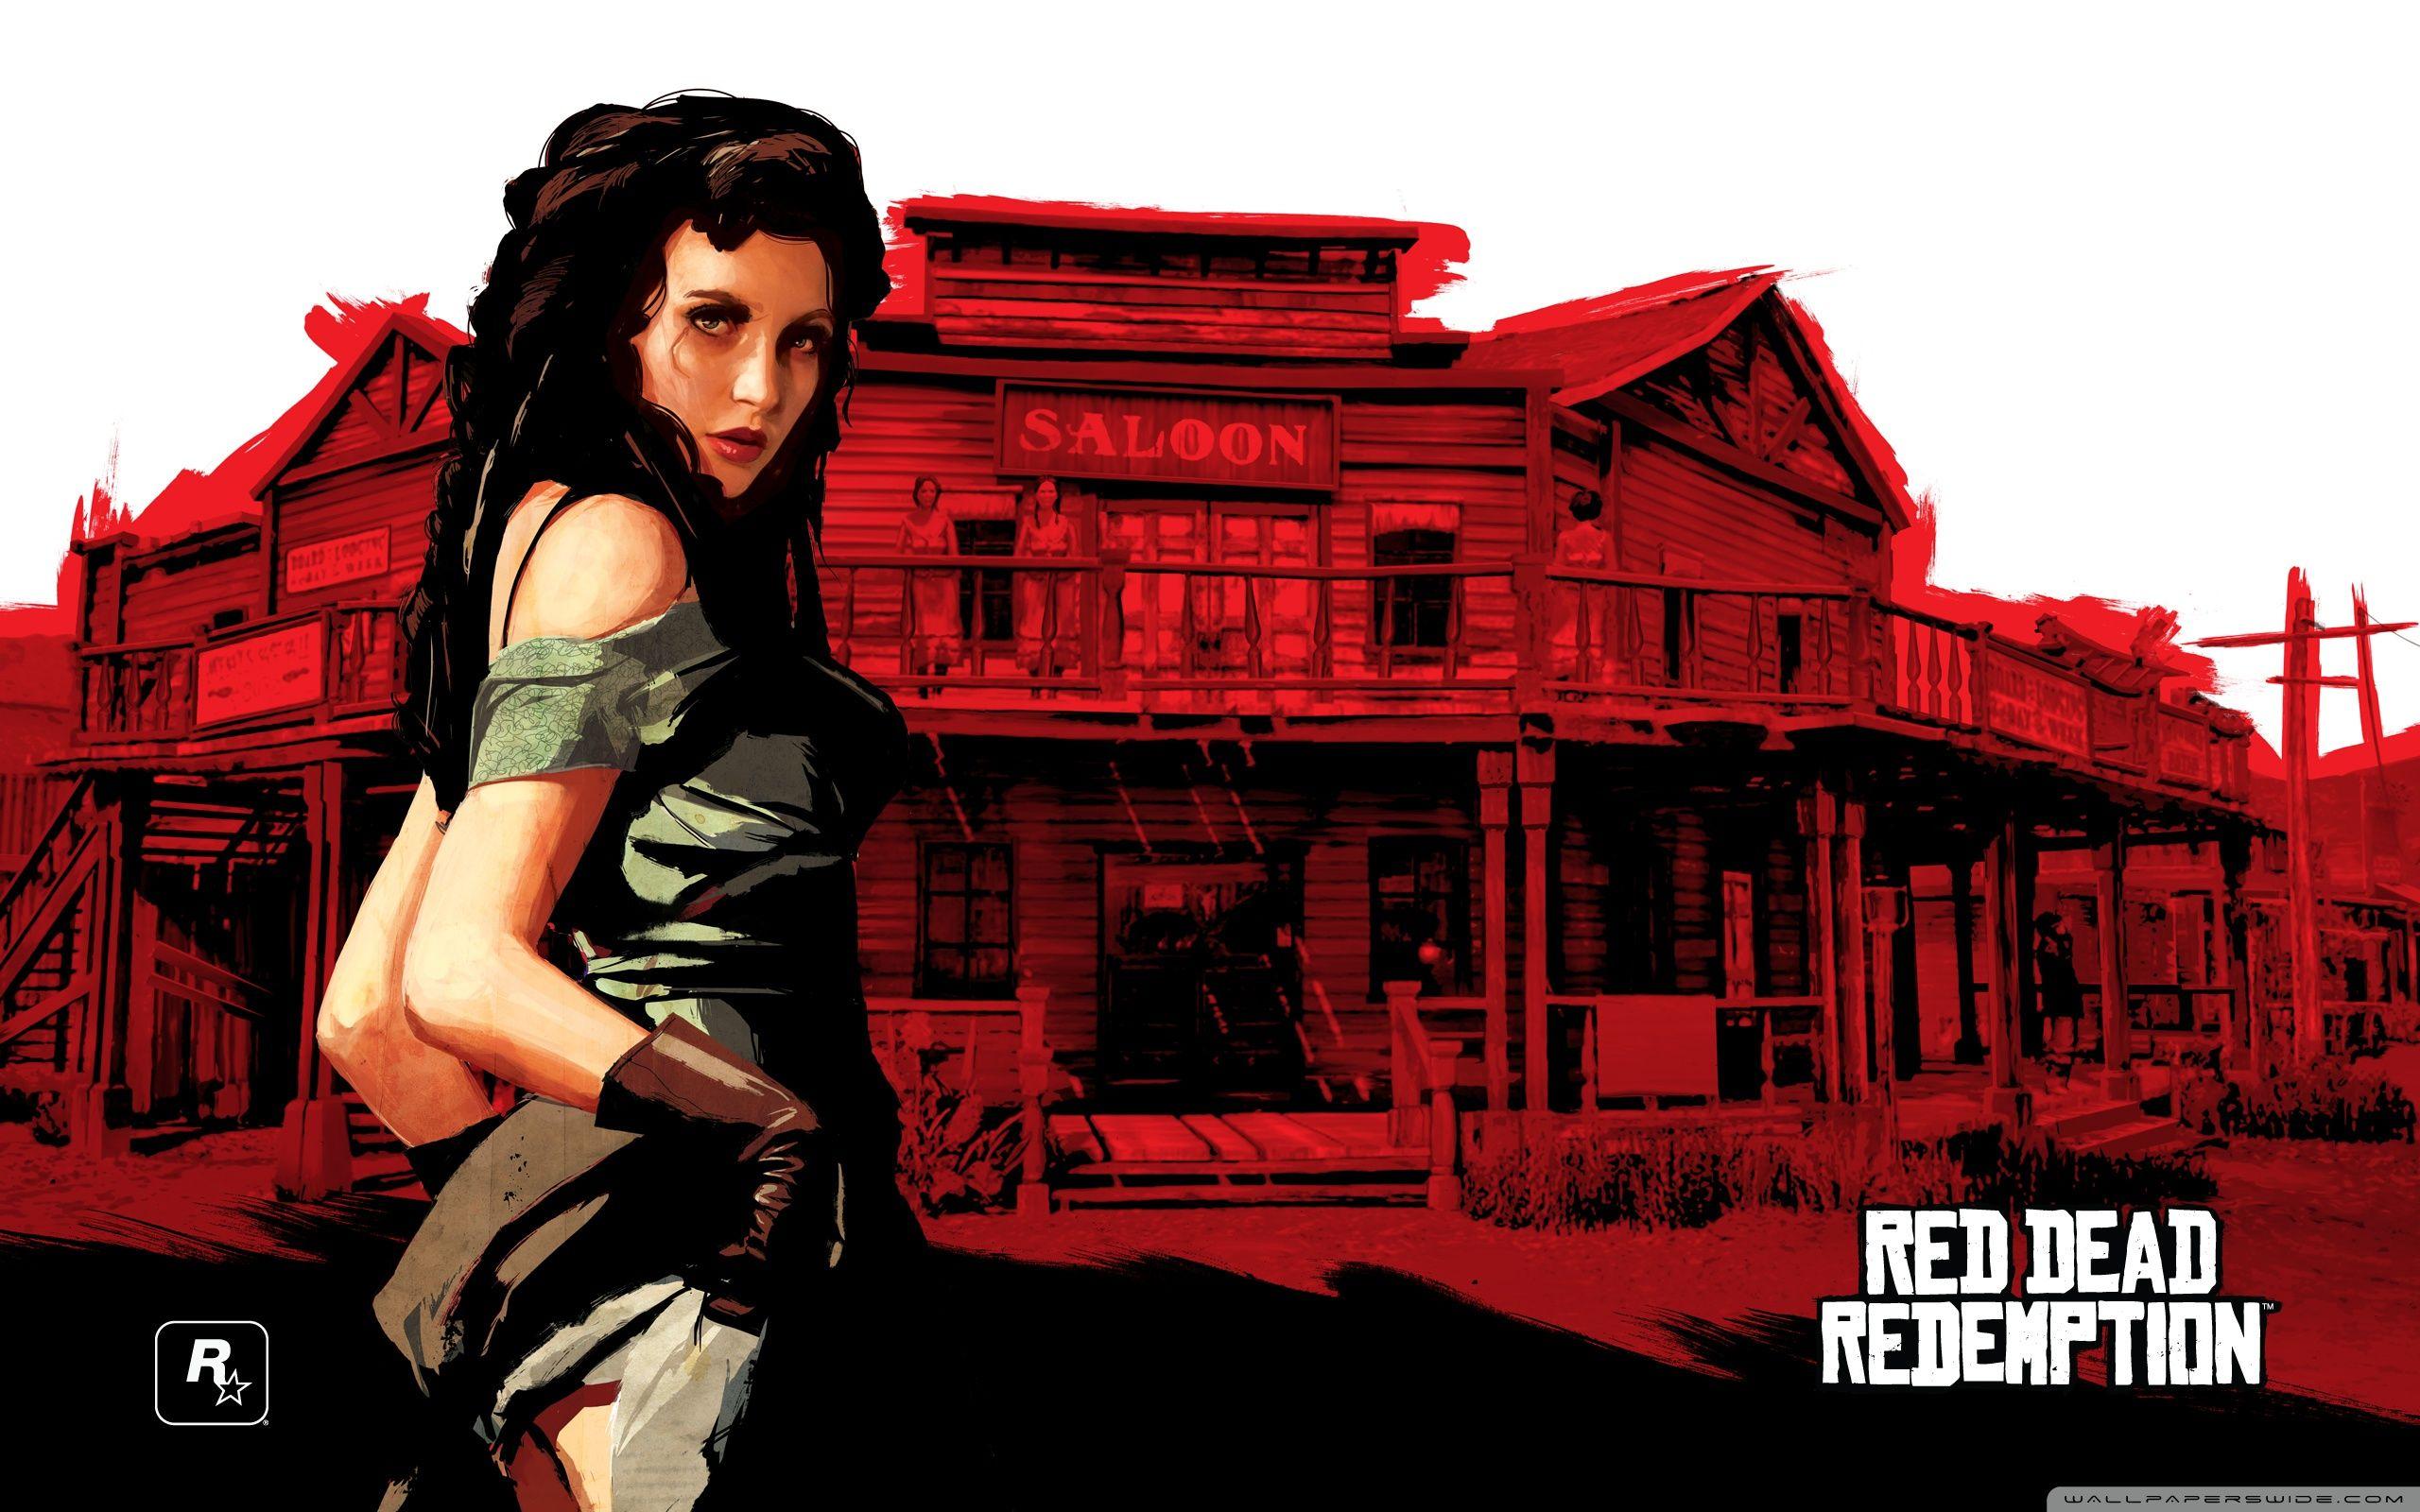 Red Dead Redemption, Scarlet Lady Ultra HD Desktop Background Wallpaper for 4K UHD TV, Widescreen & UltraWide Desktop & Laptop, Tablet